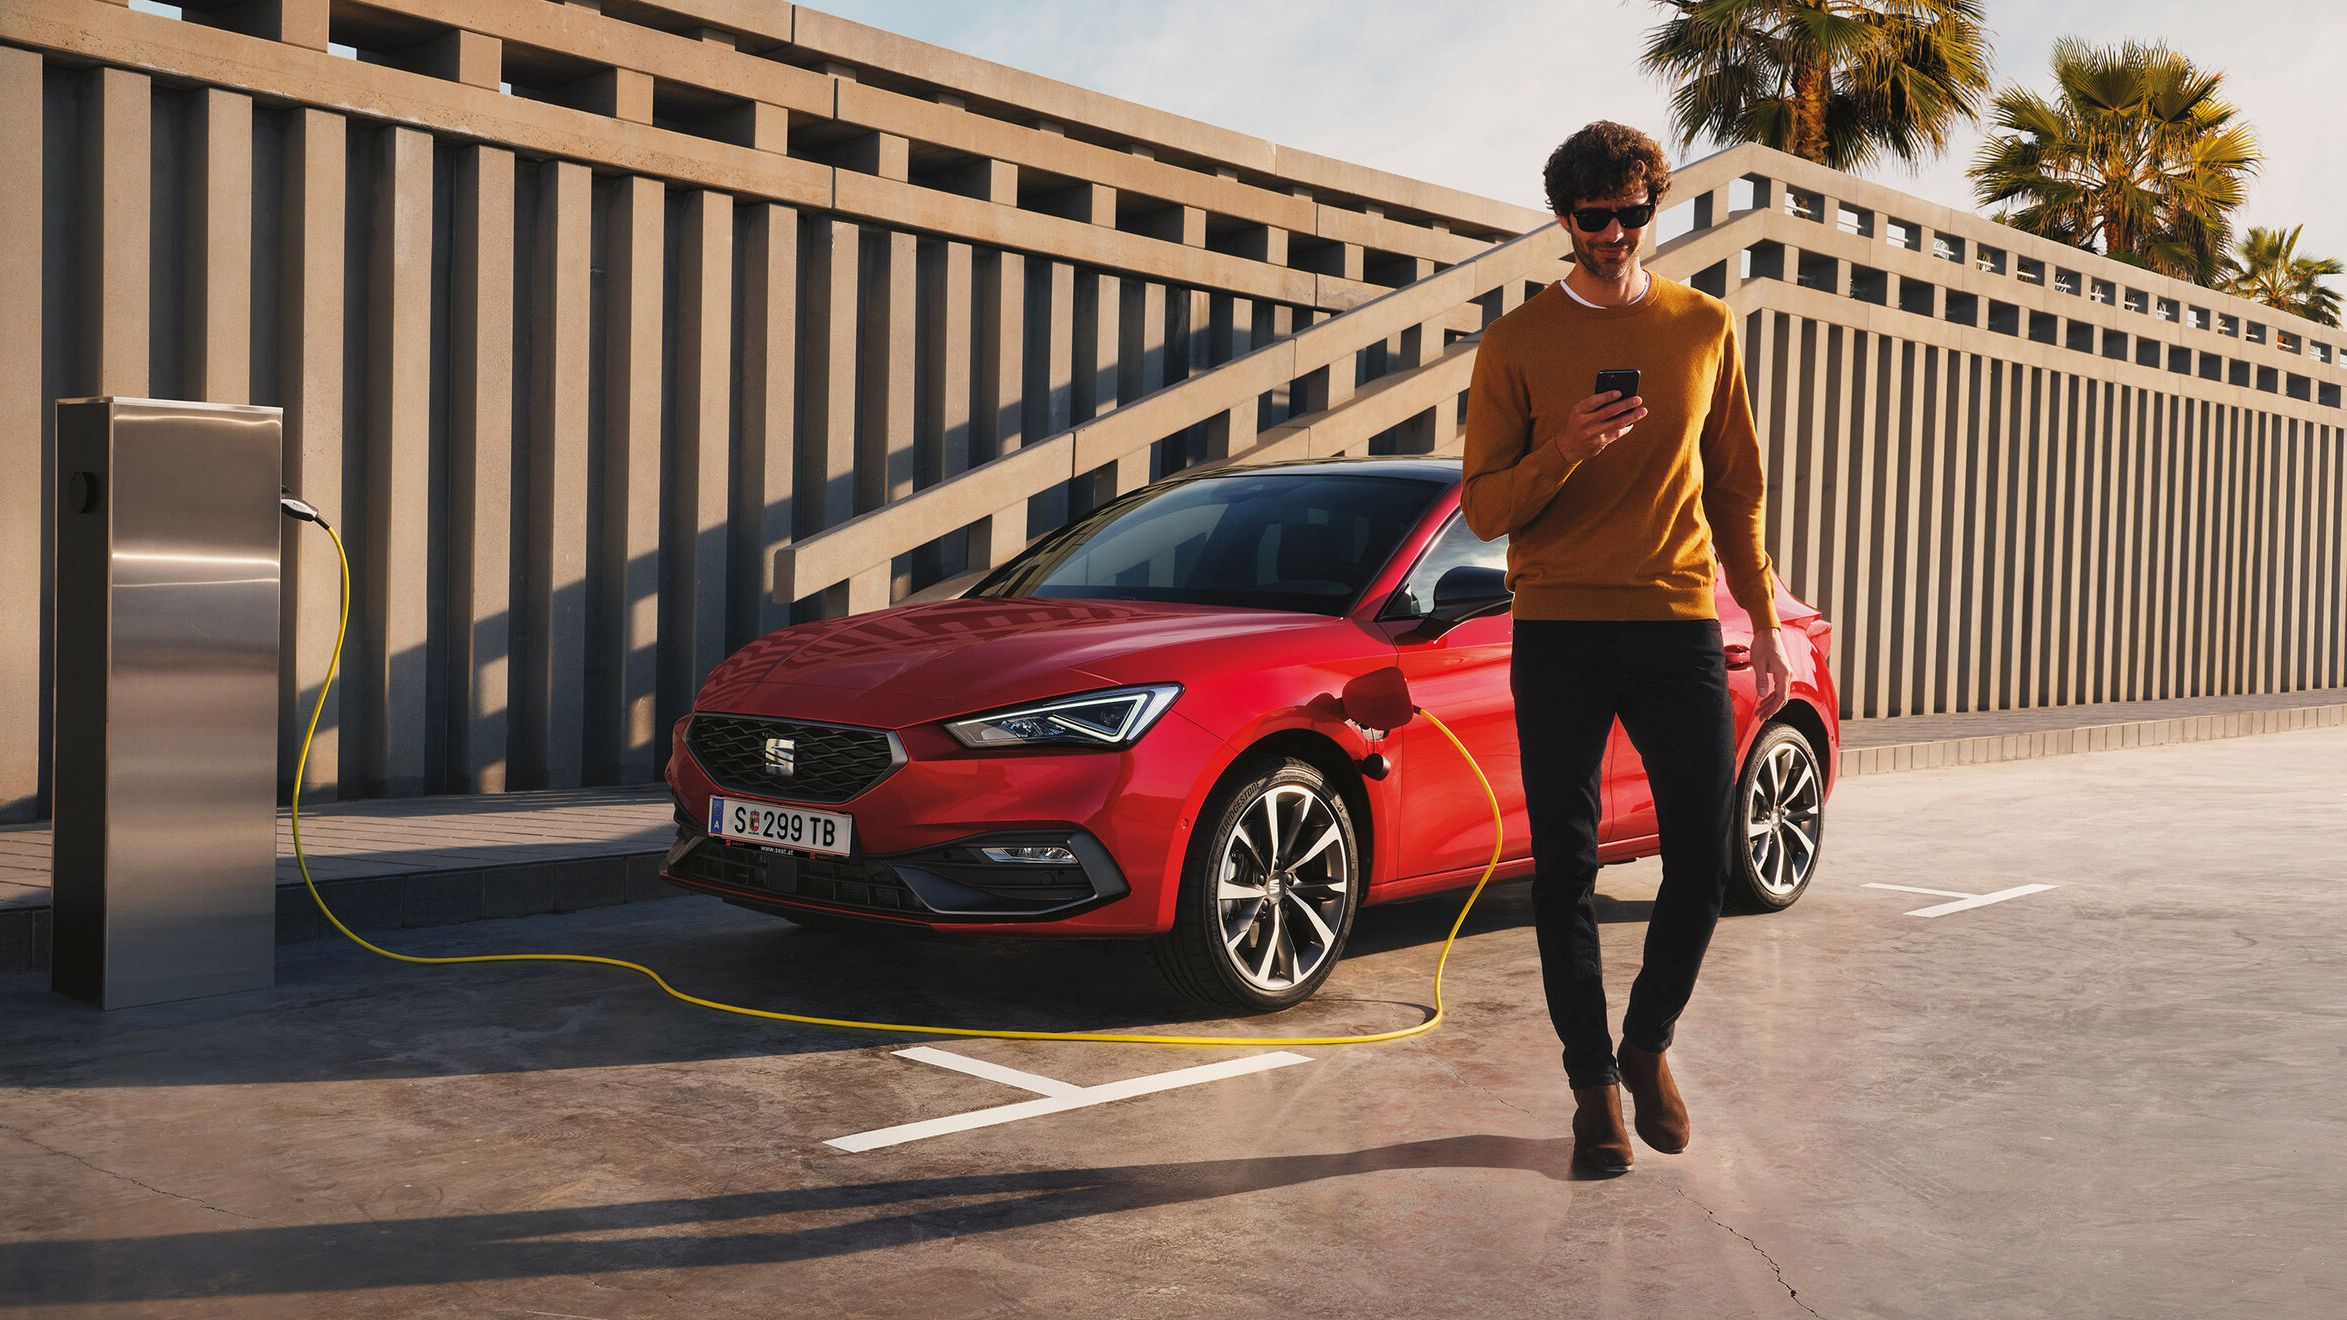 Ein roter SEAT Ibiza steht an der Ladesäule. Ein Mann geht neben dem Auto.